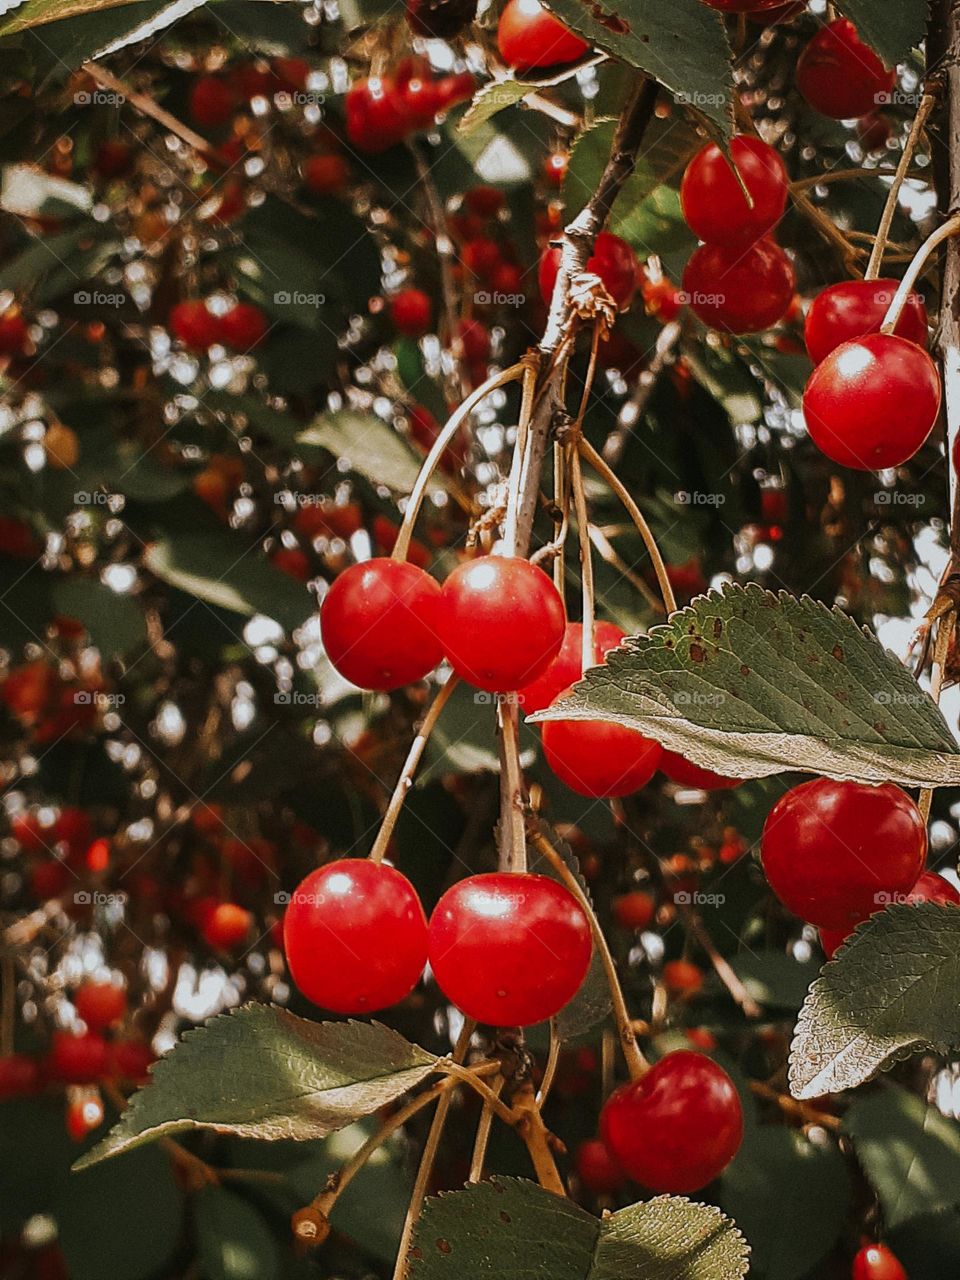 Ukrainian cherry